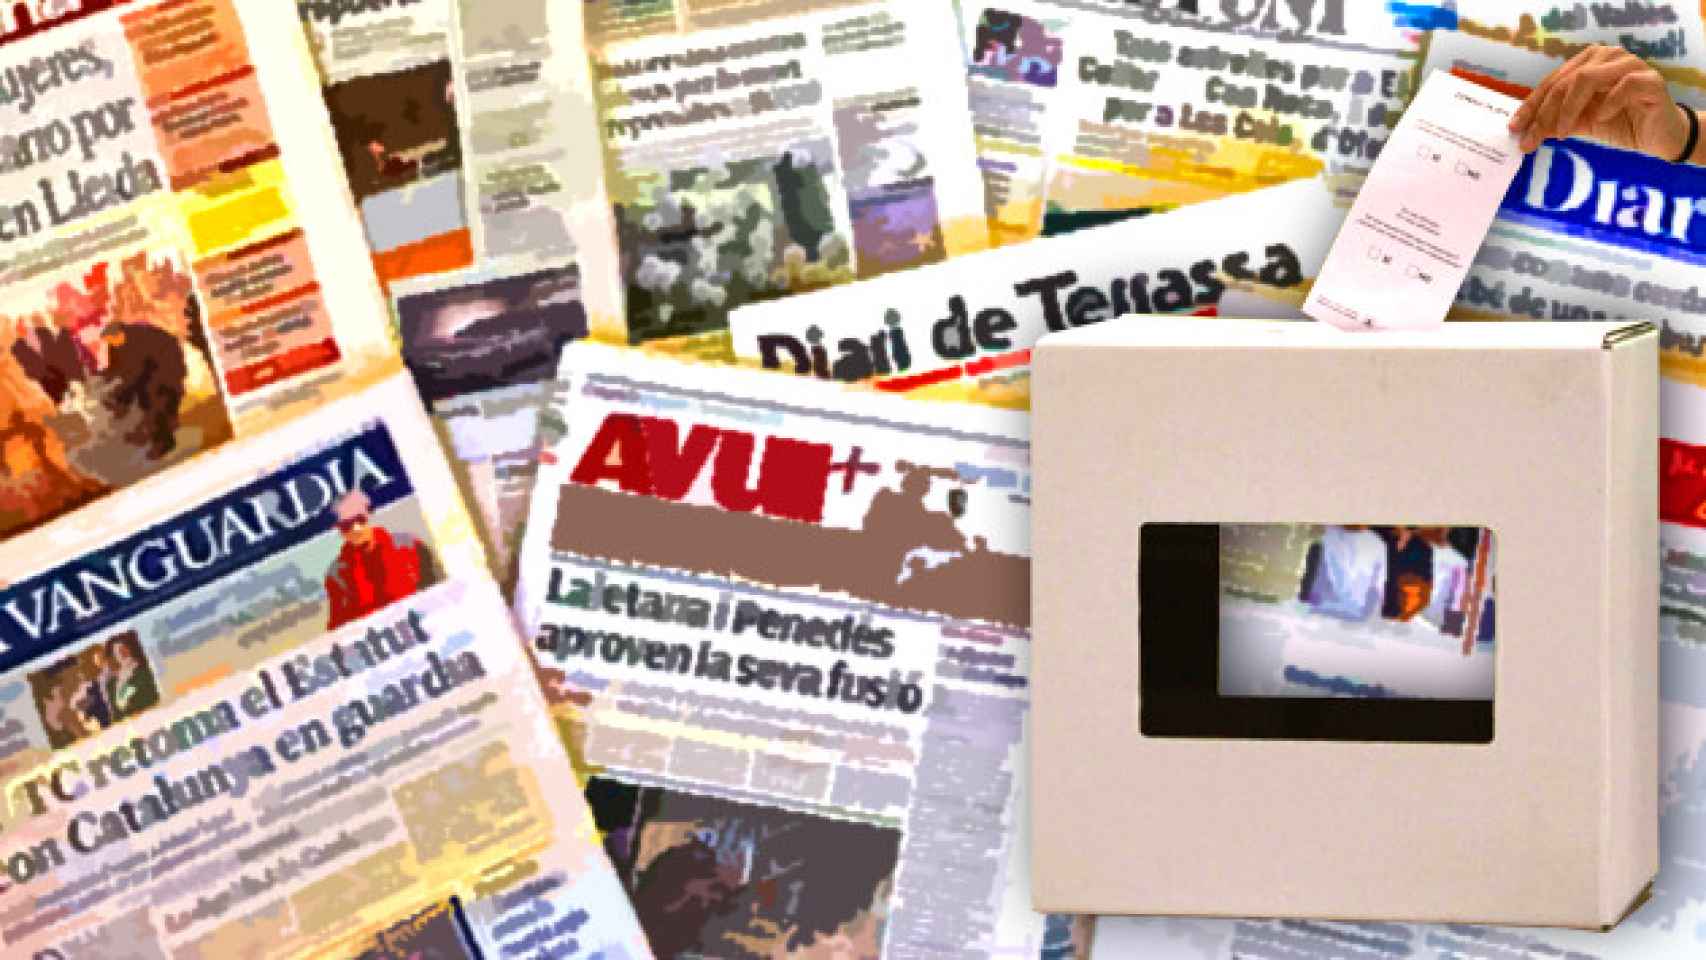 Periódicos catalanes, entre ellos varios medios soberanistas, tras una urna utilizada para votar la independencia de Cataluña / CG